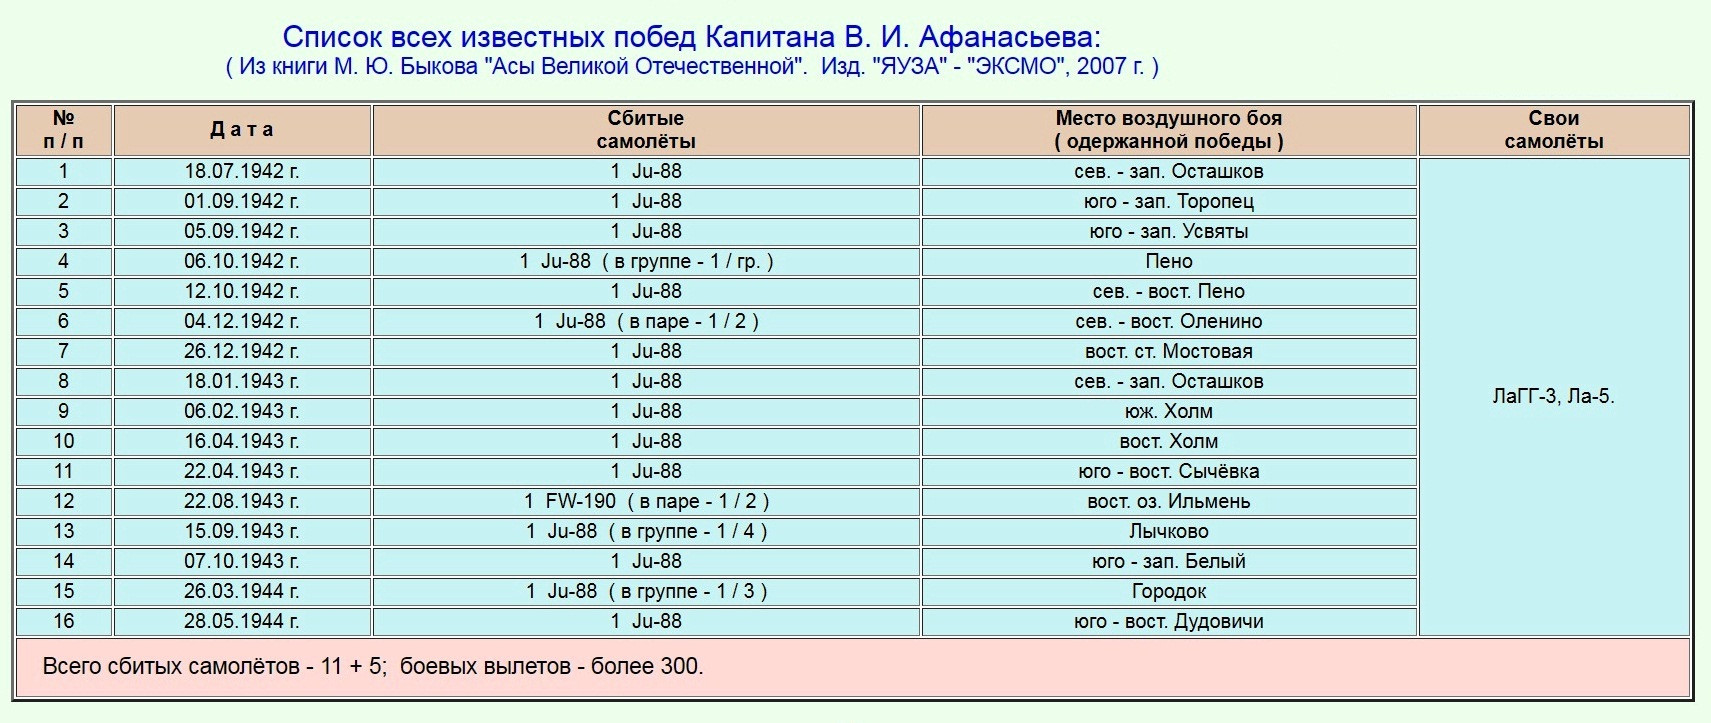 Список побед капитана Афанасьева